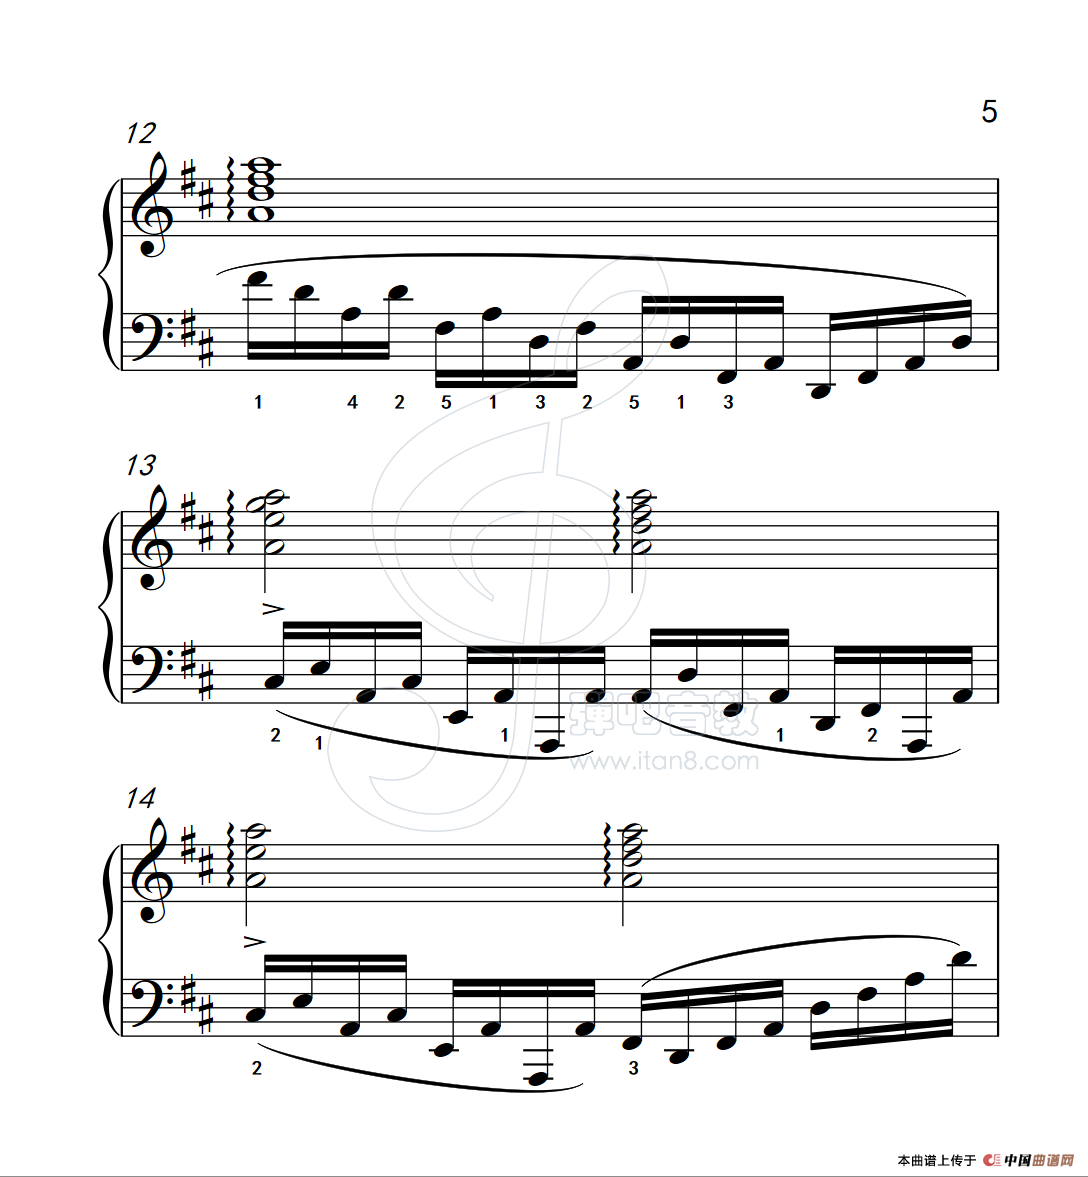 《练习曲 20》钢琴曲谱图分享